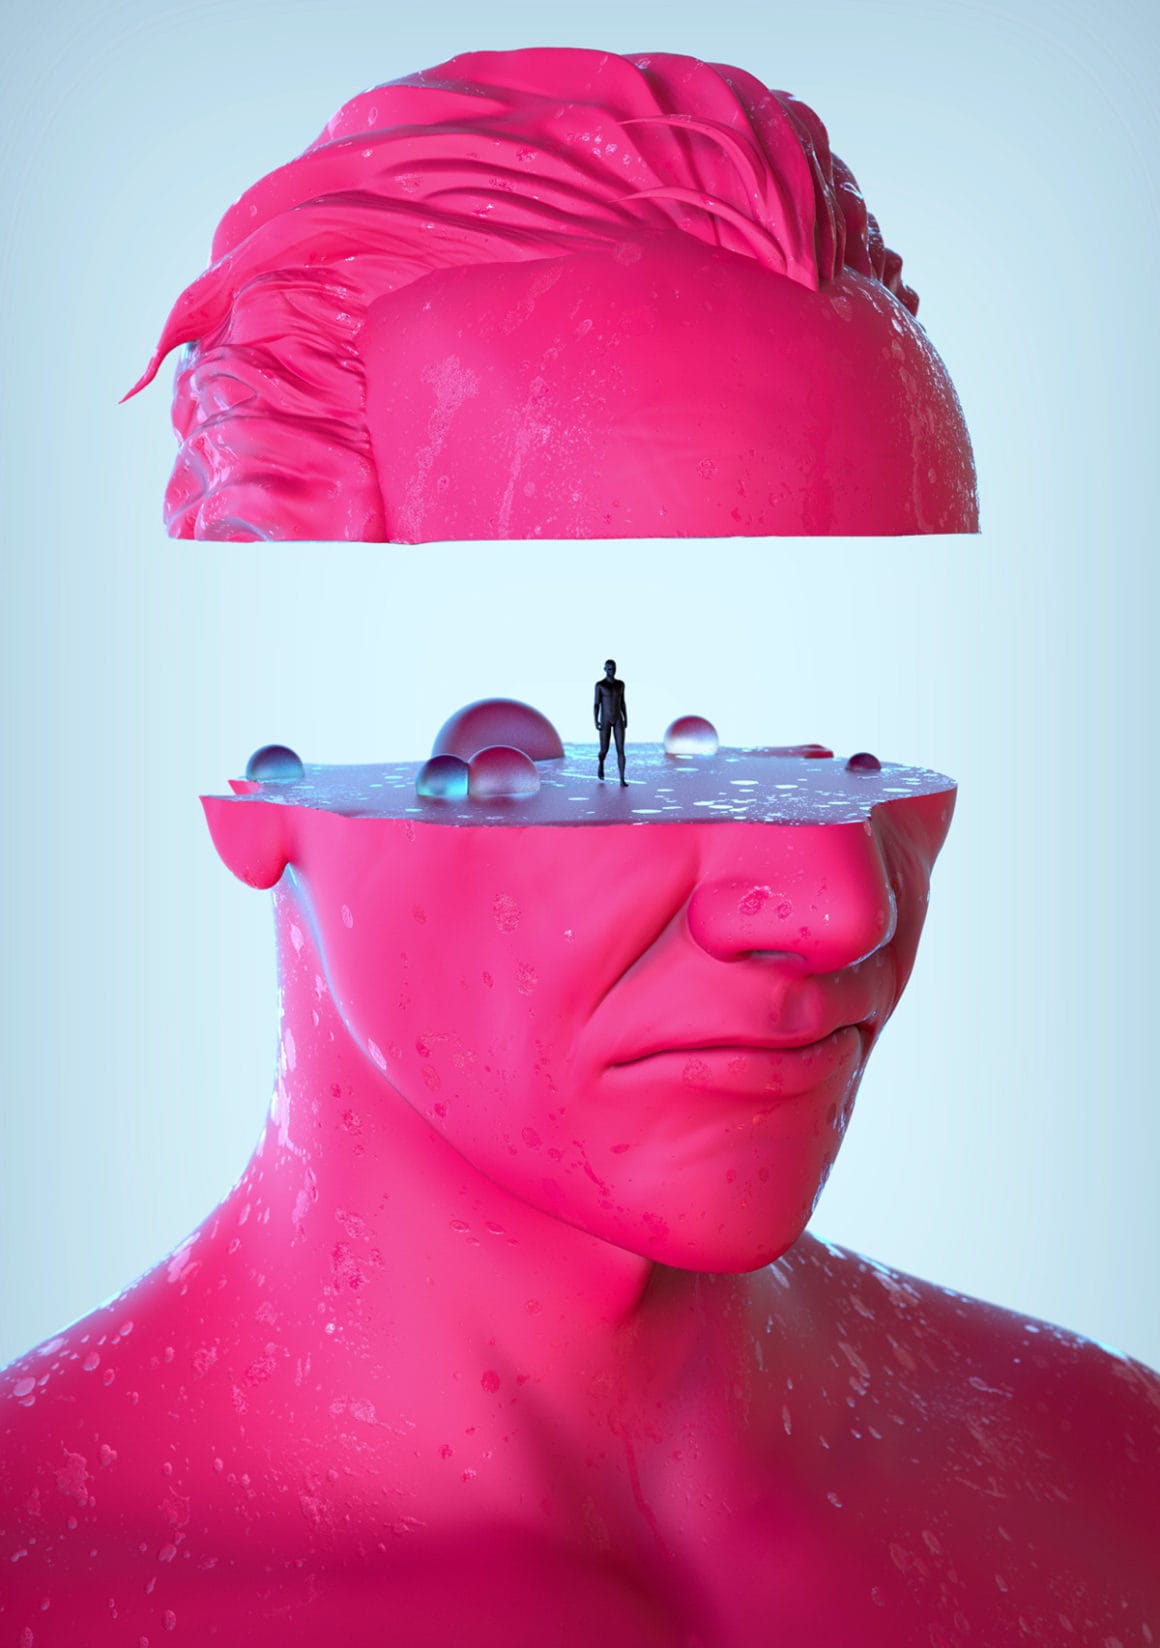 Illustration numérique, un visage rose d'homme géant est scindé en deux horizontalement. Un homme se tient debout sur la partie inférieure du visage.